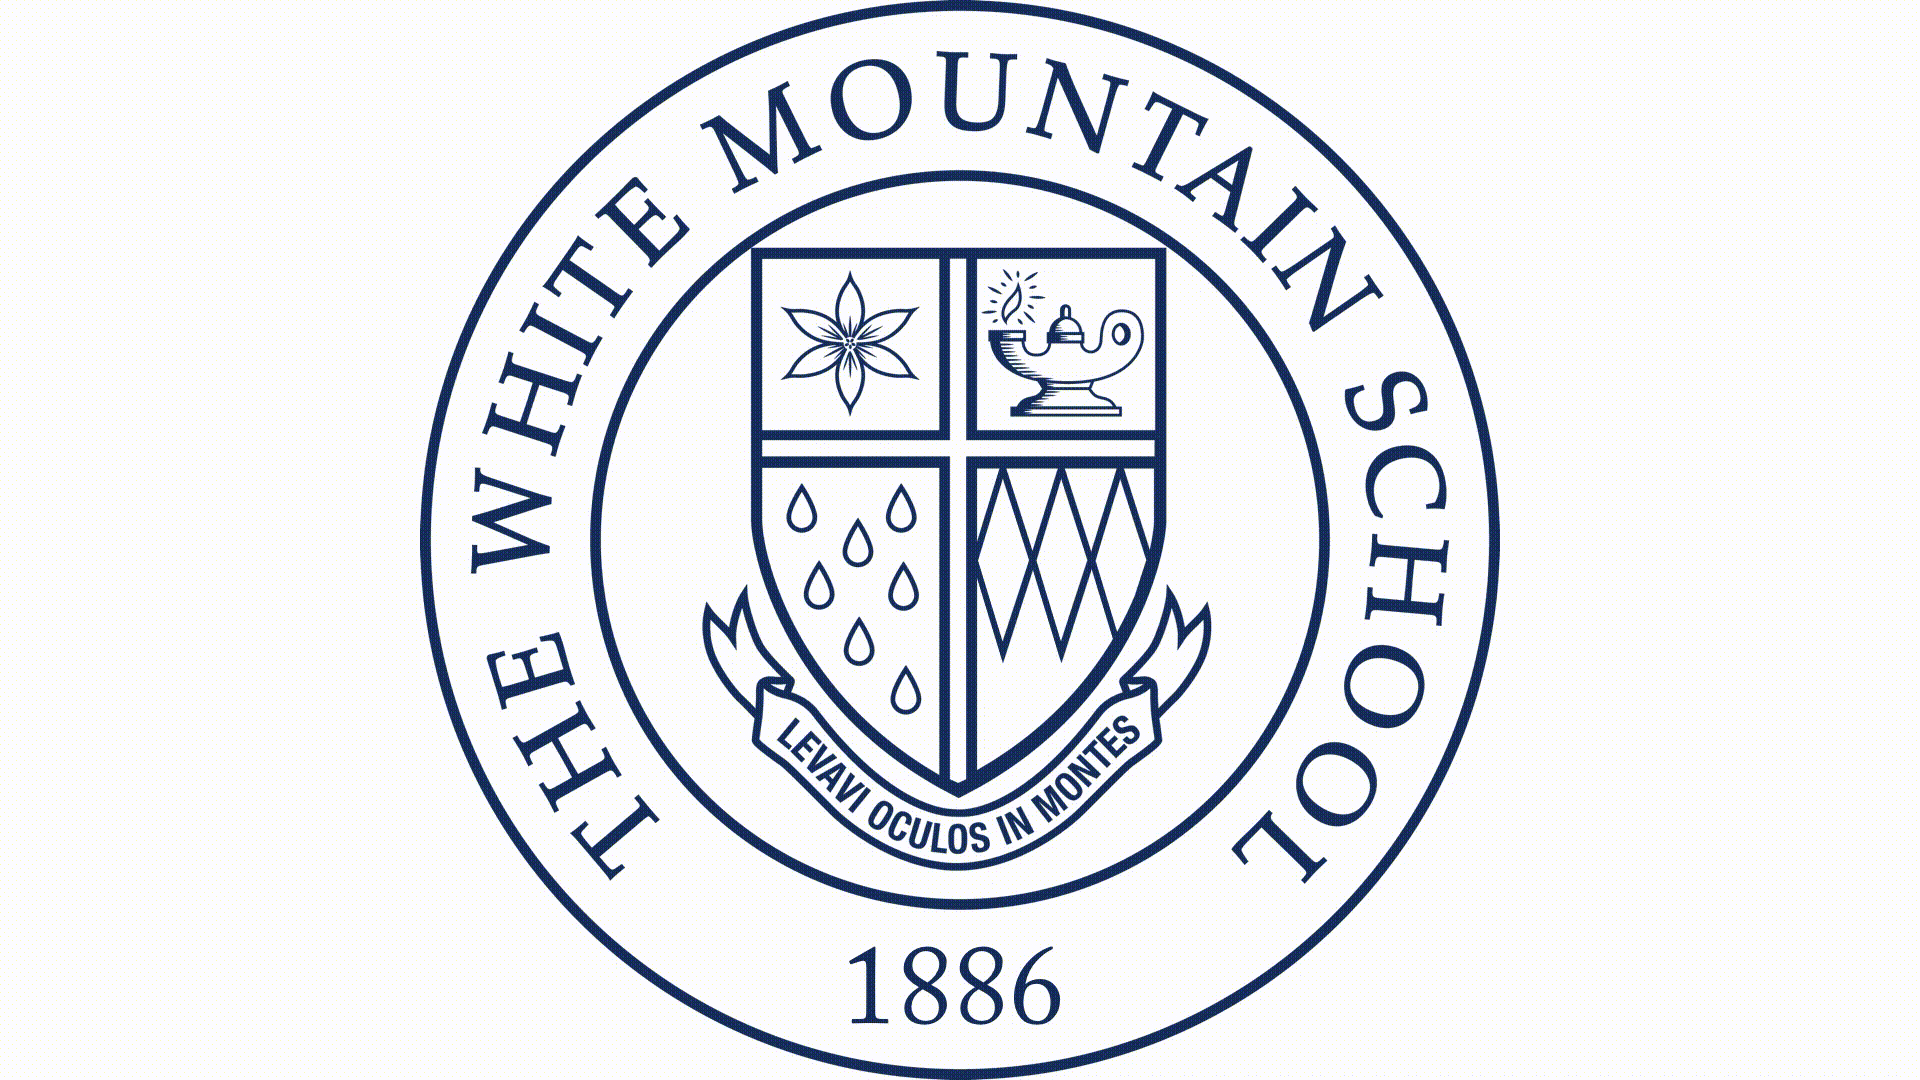 White Mountain Logo - Our new athletic logo. The White Mountain School